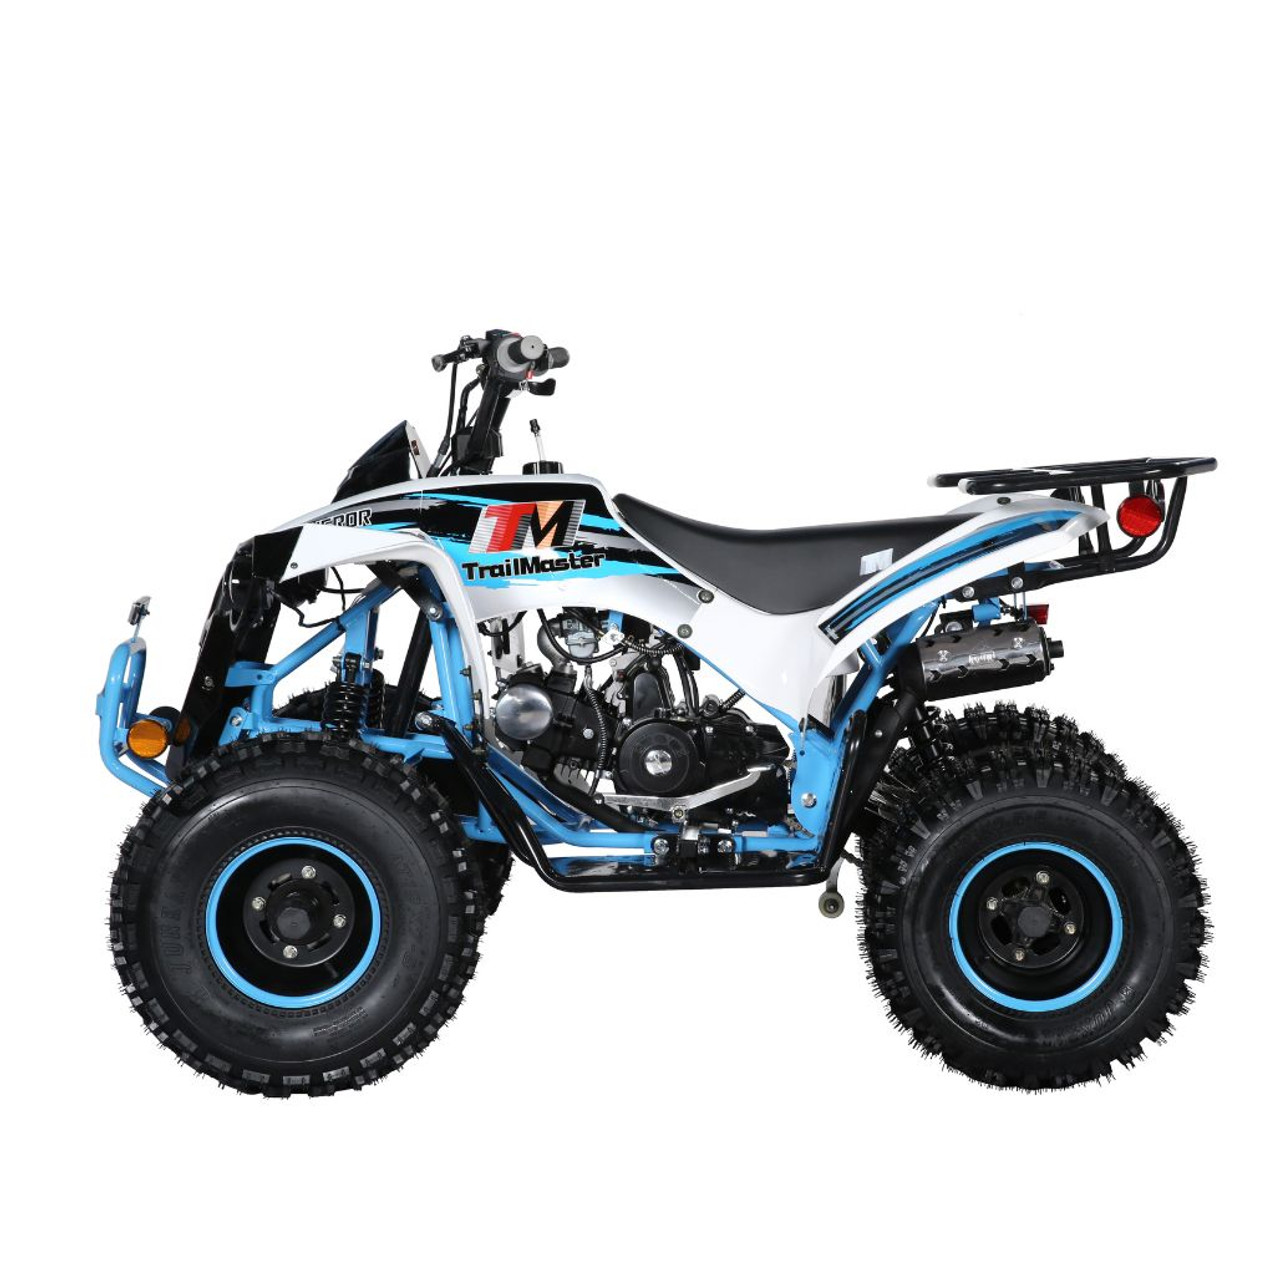 TrailMaster C125 125cc Sport ATV (TM-C125)